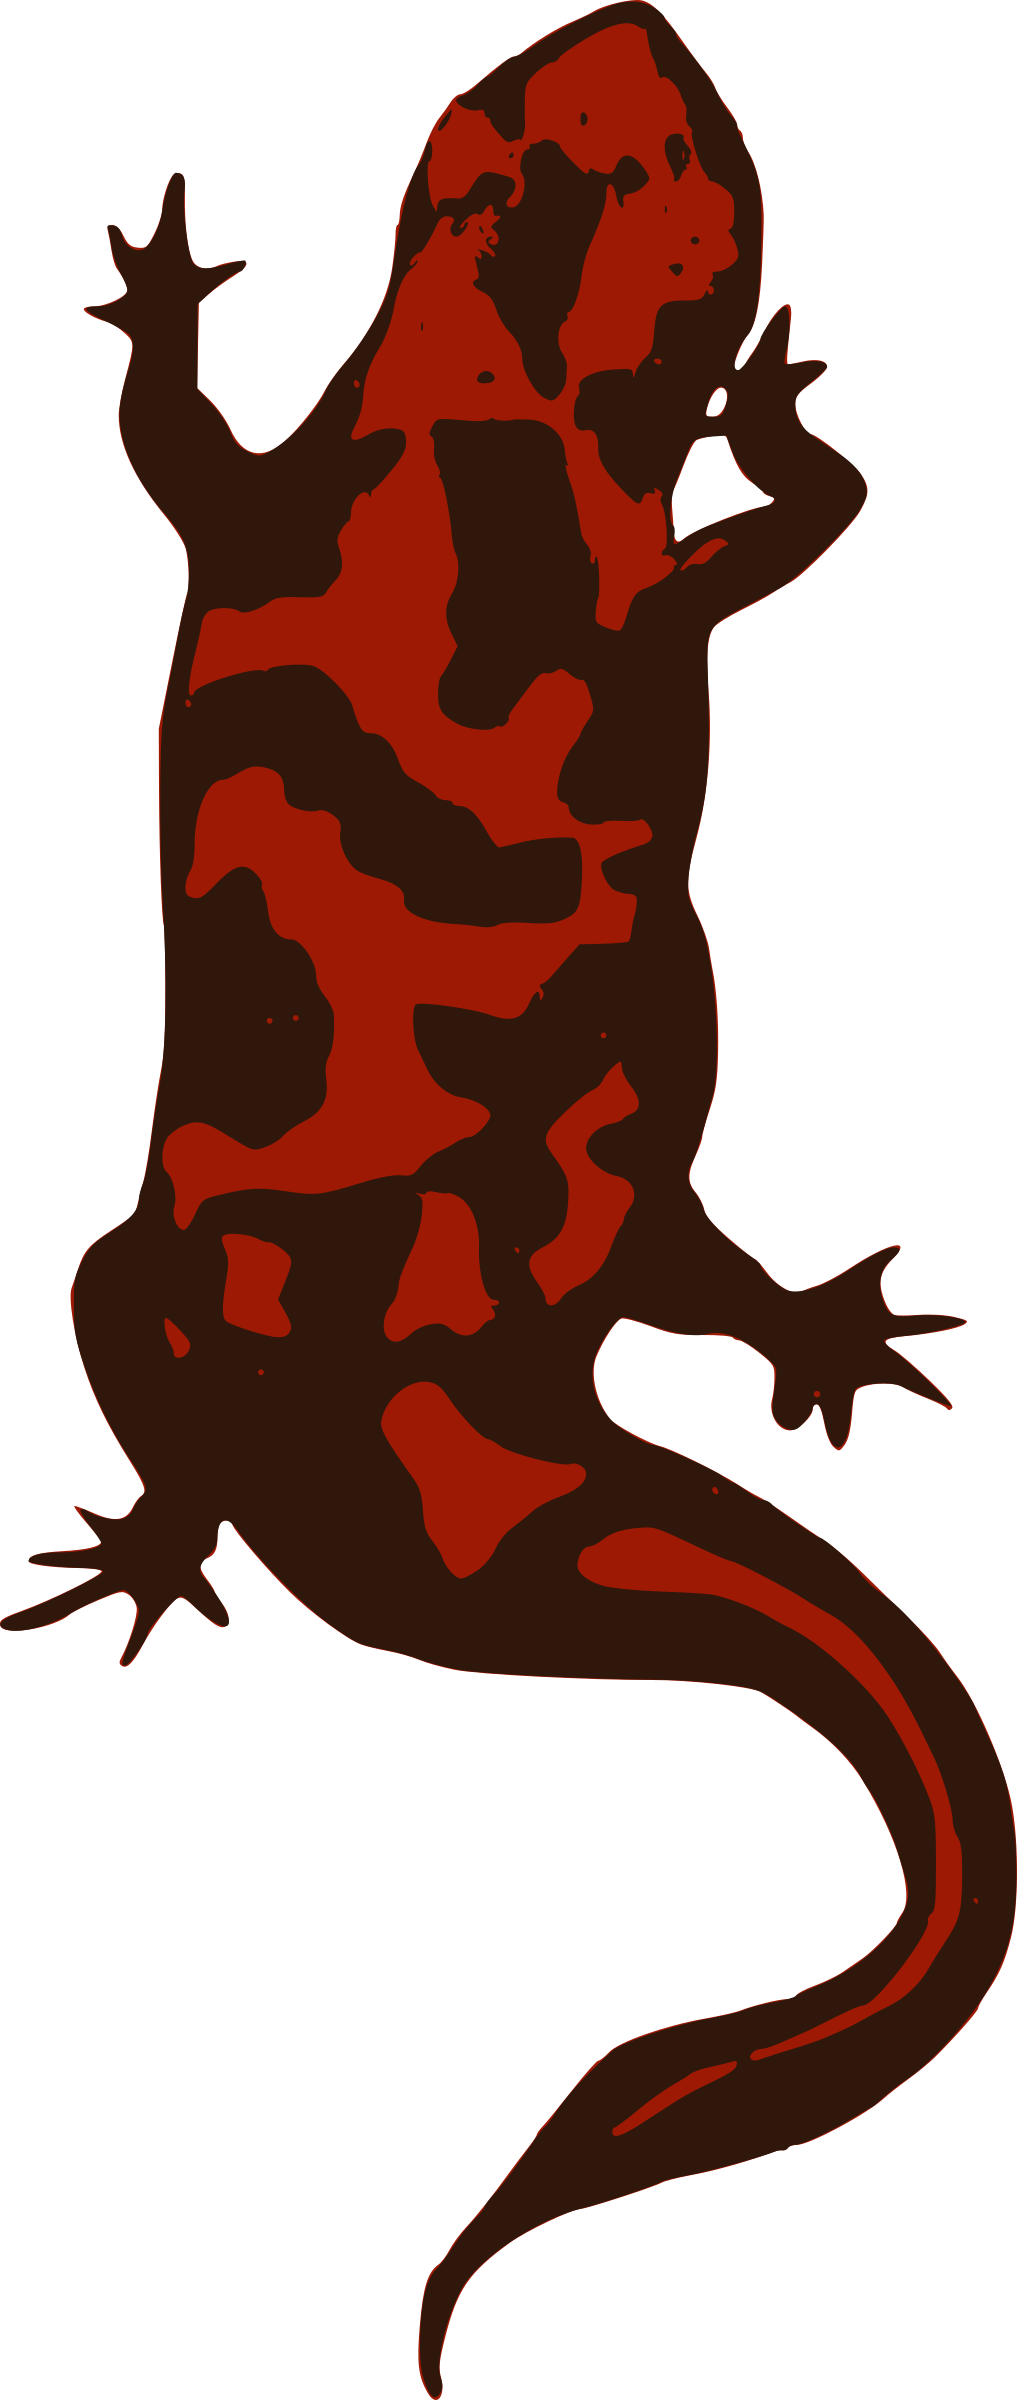 lizard clipart red lizard